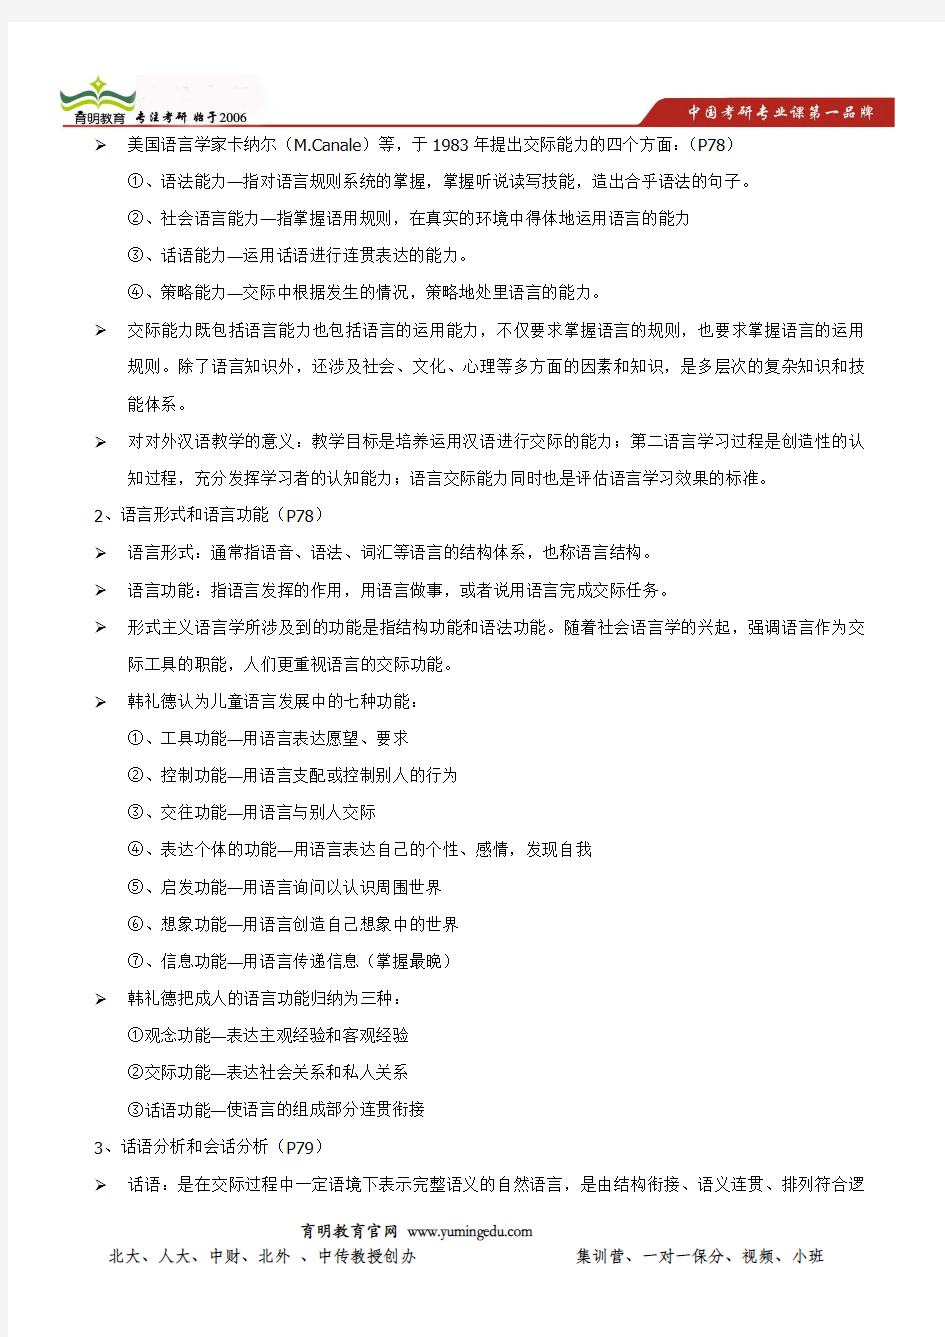 中央民族大学主办辅导班-第二节 对外汉语教学的语言学基础(二)